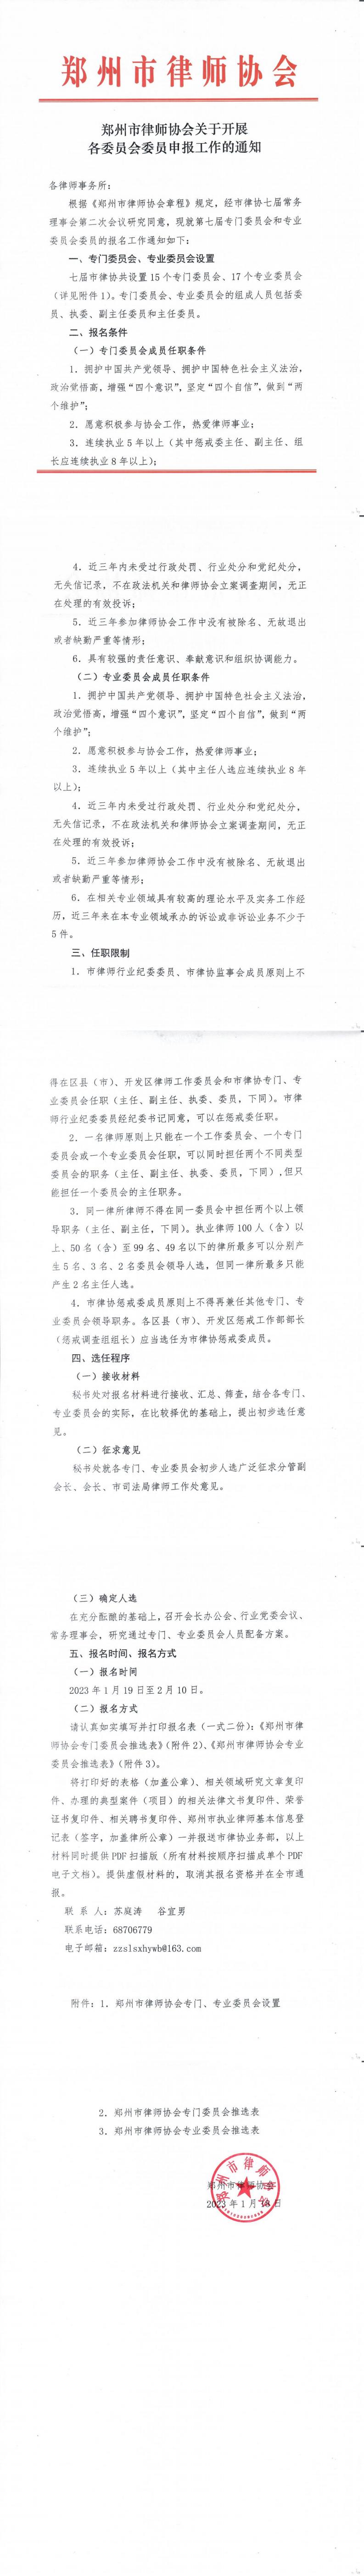 郑州市律师协会关于开展各委员会委员申报工作的通知_00.jpg